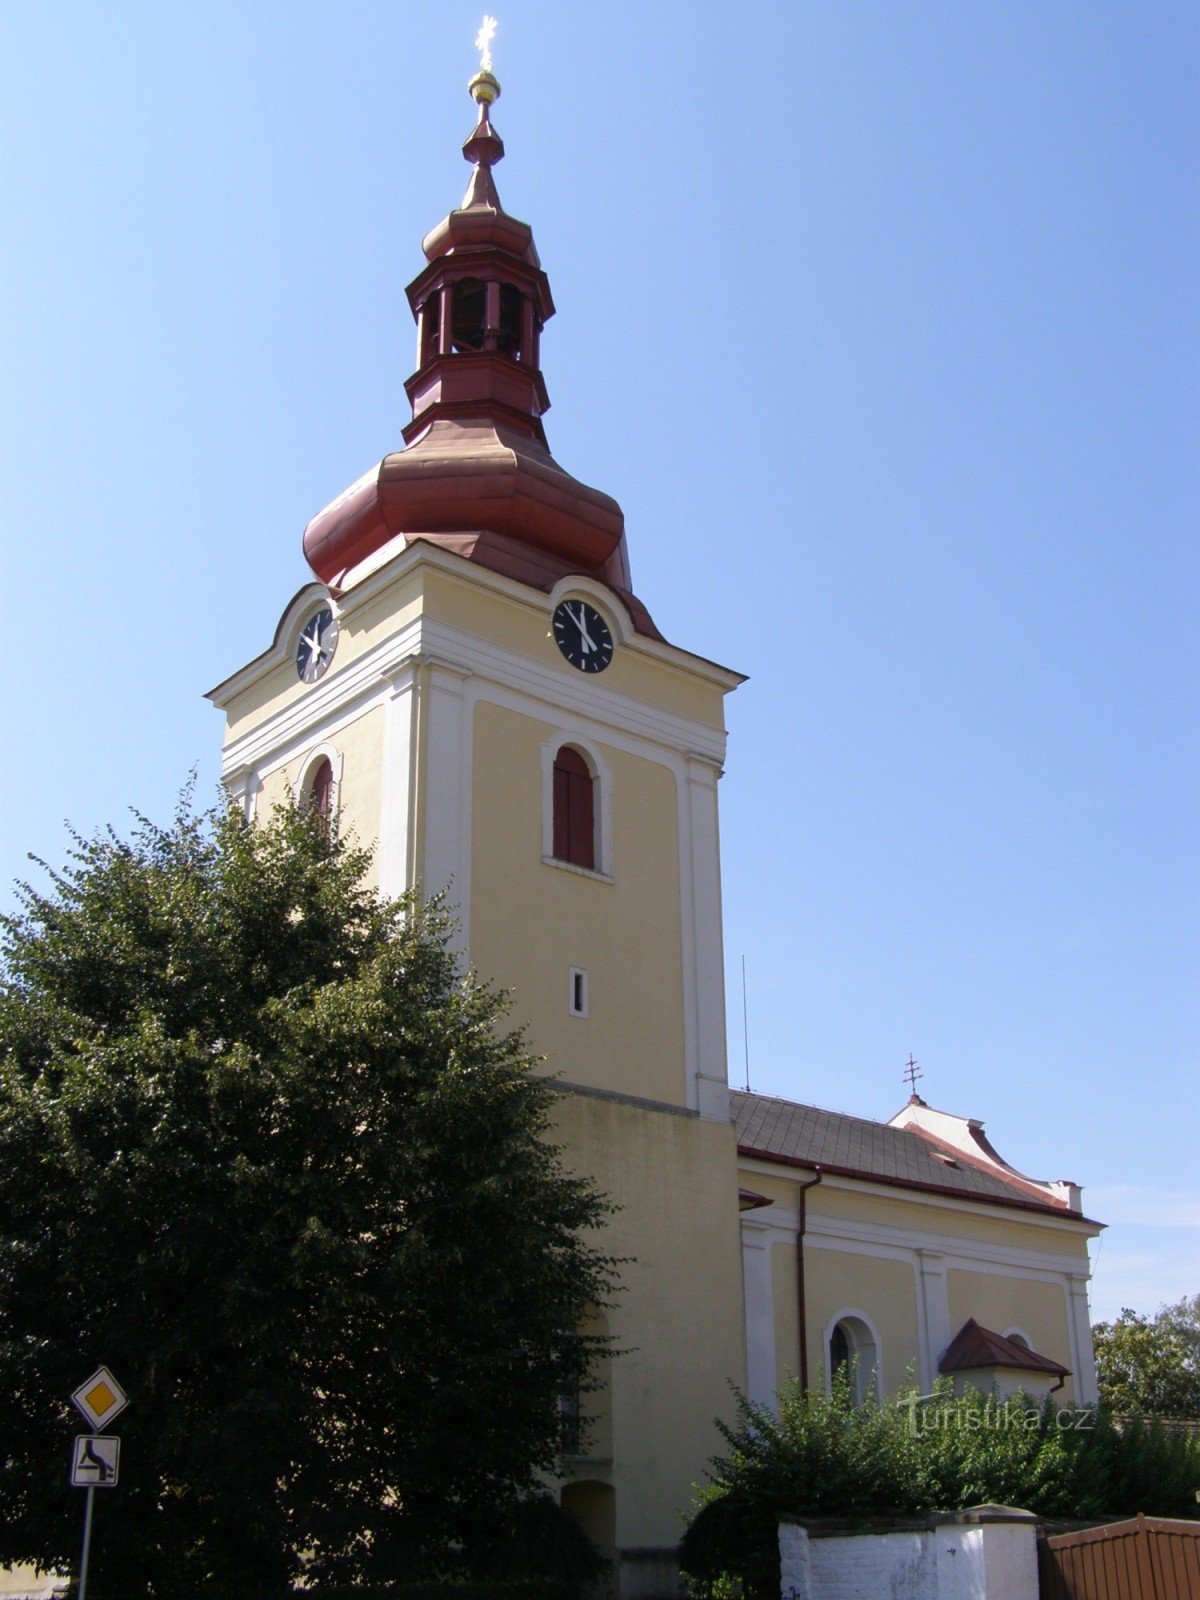 Milovice - Kirche